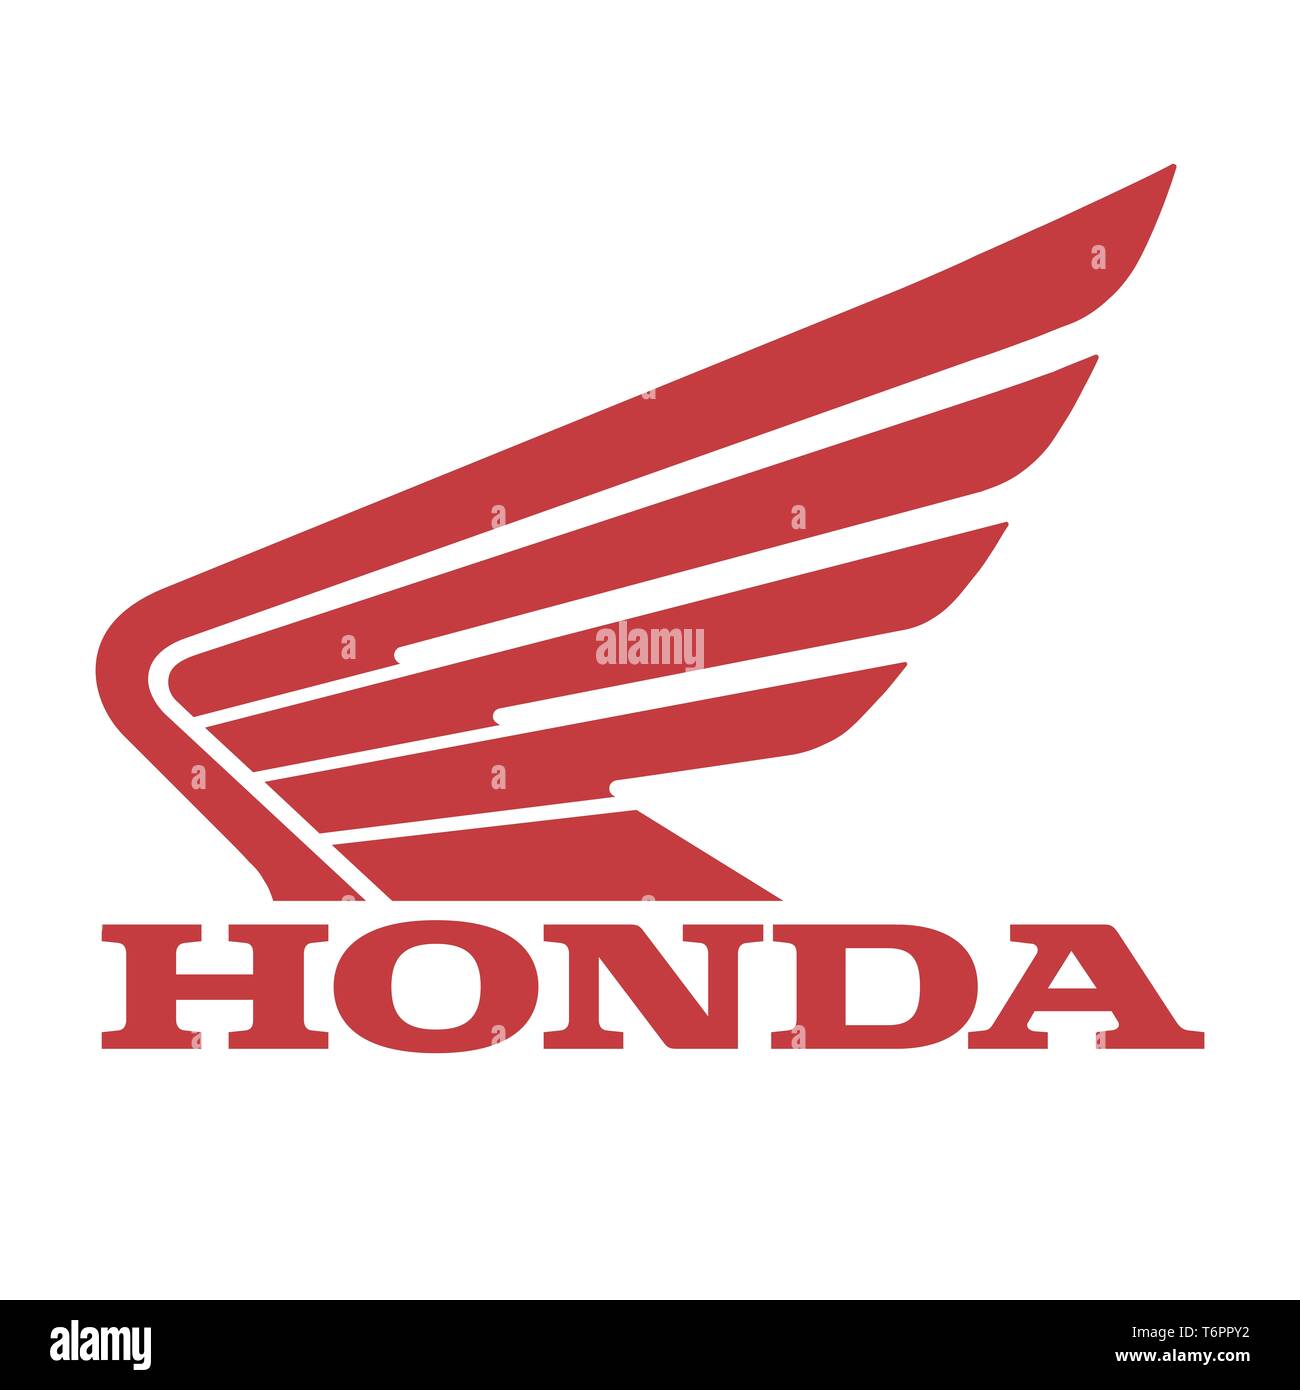 Honda logo, corporate identity, lettering, optional, white background, Germany Stock Photo